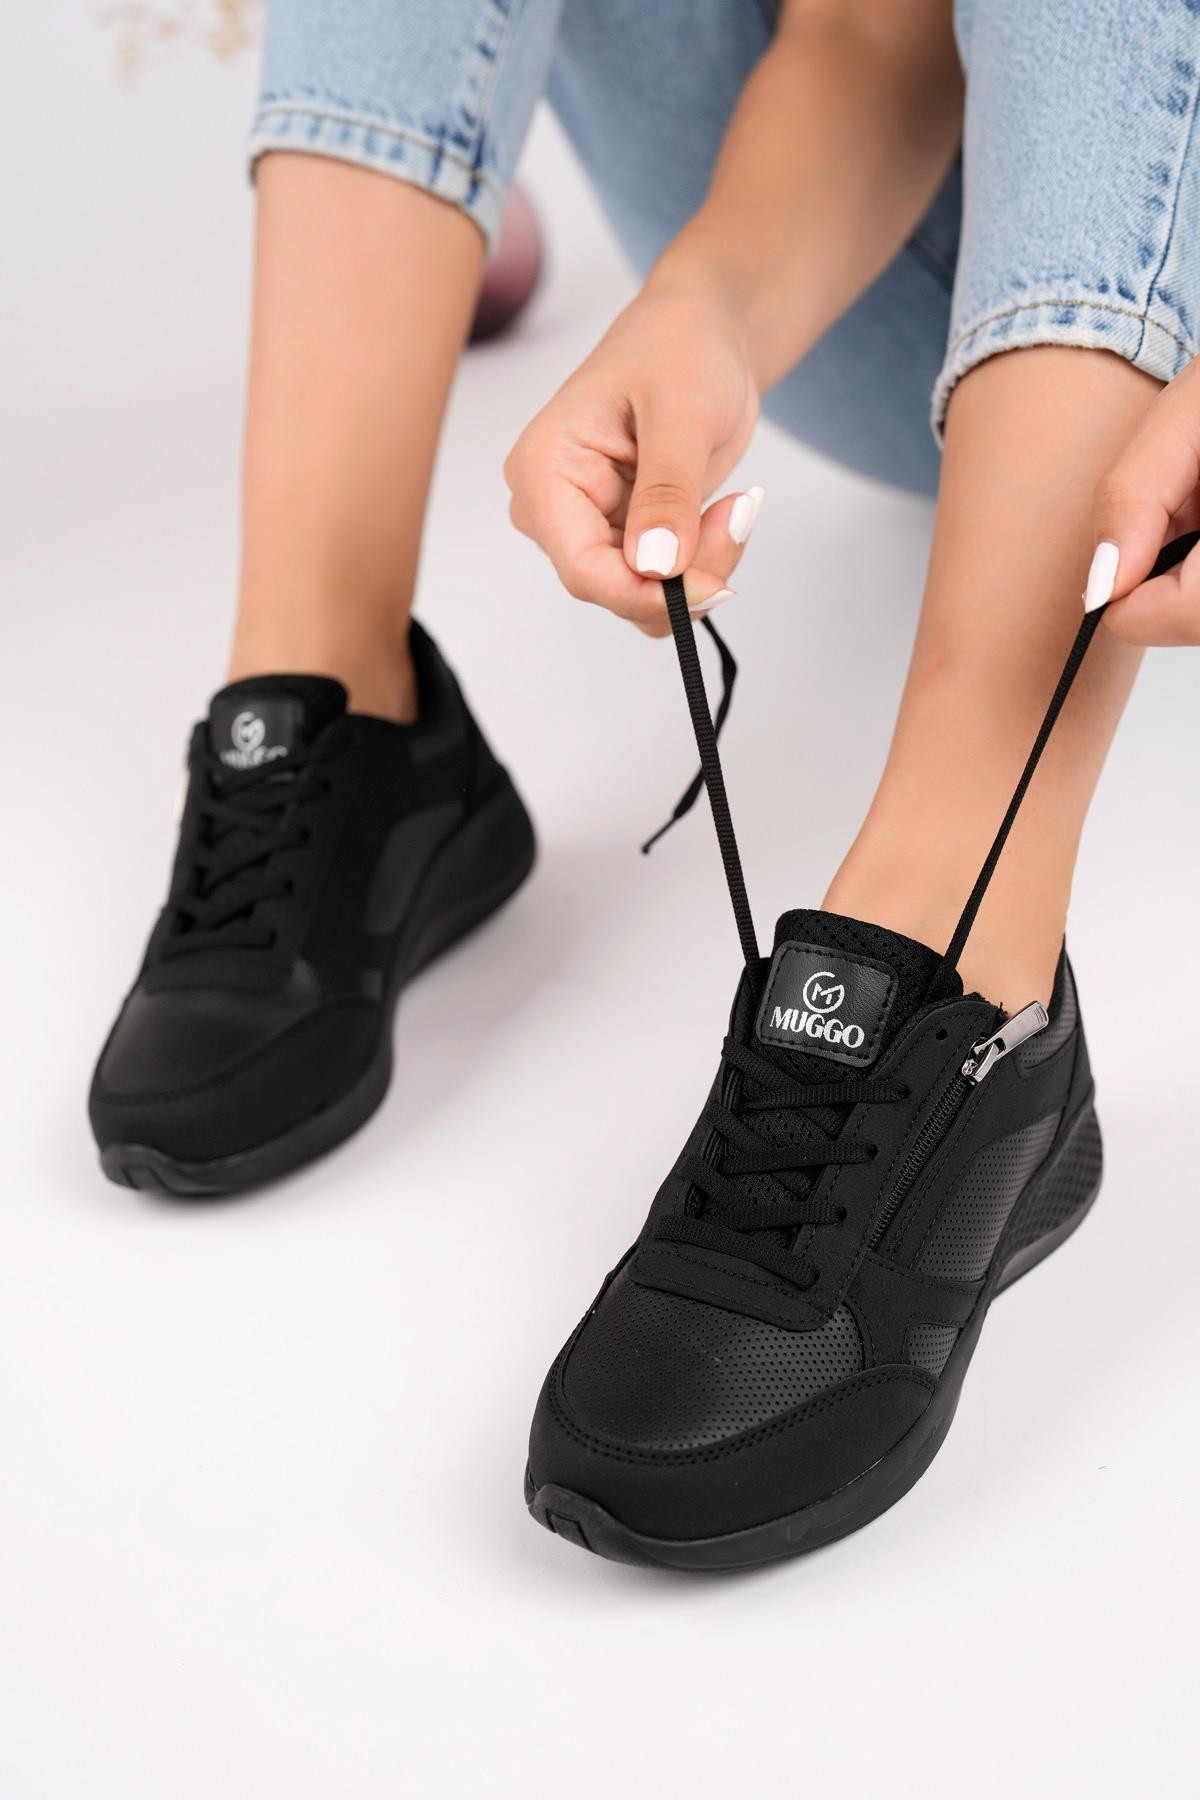 Muggo Asel Garantili Kadın Ortopedik Günlük Bağcıklı Yandan Fermuarlı Rahat Sneaker Spor Ayakkabı - SİYAH